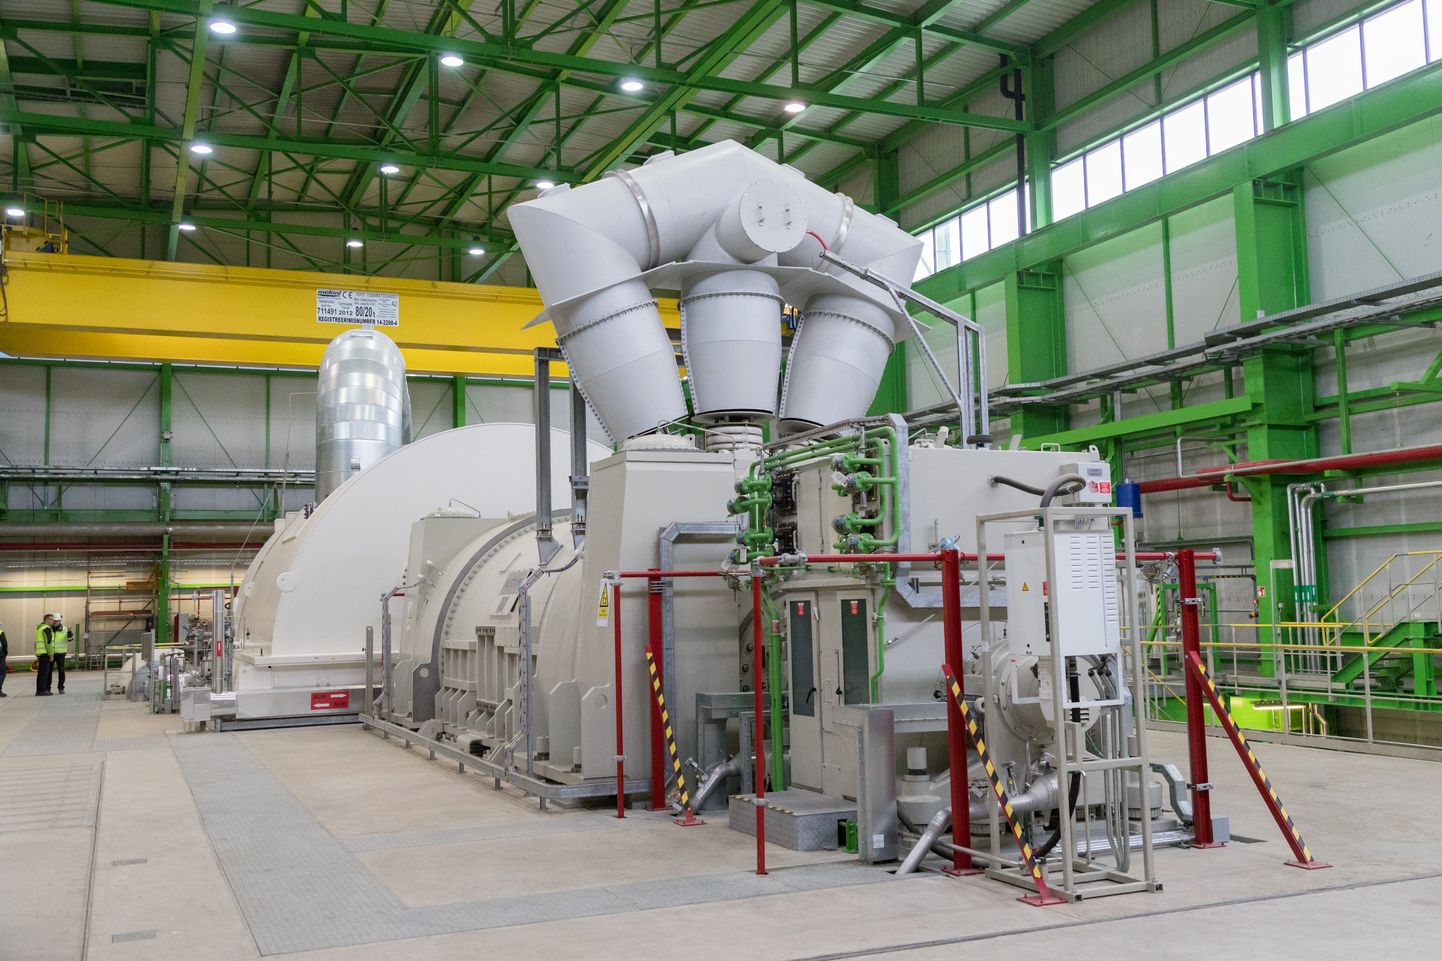 "Сердце" Аувереской электростанции - паротурбина с генератором, обошедшиеся в 100 миллионов евро.